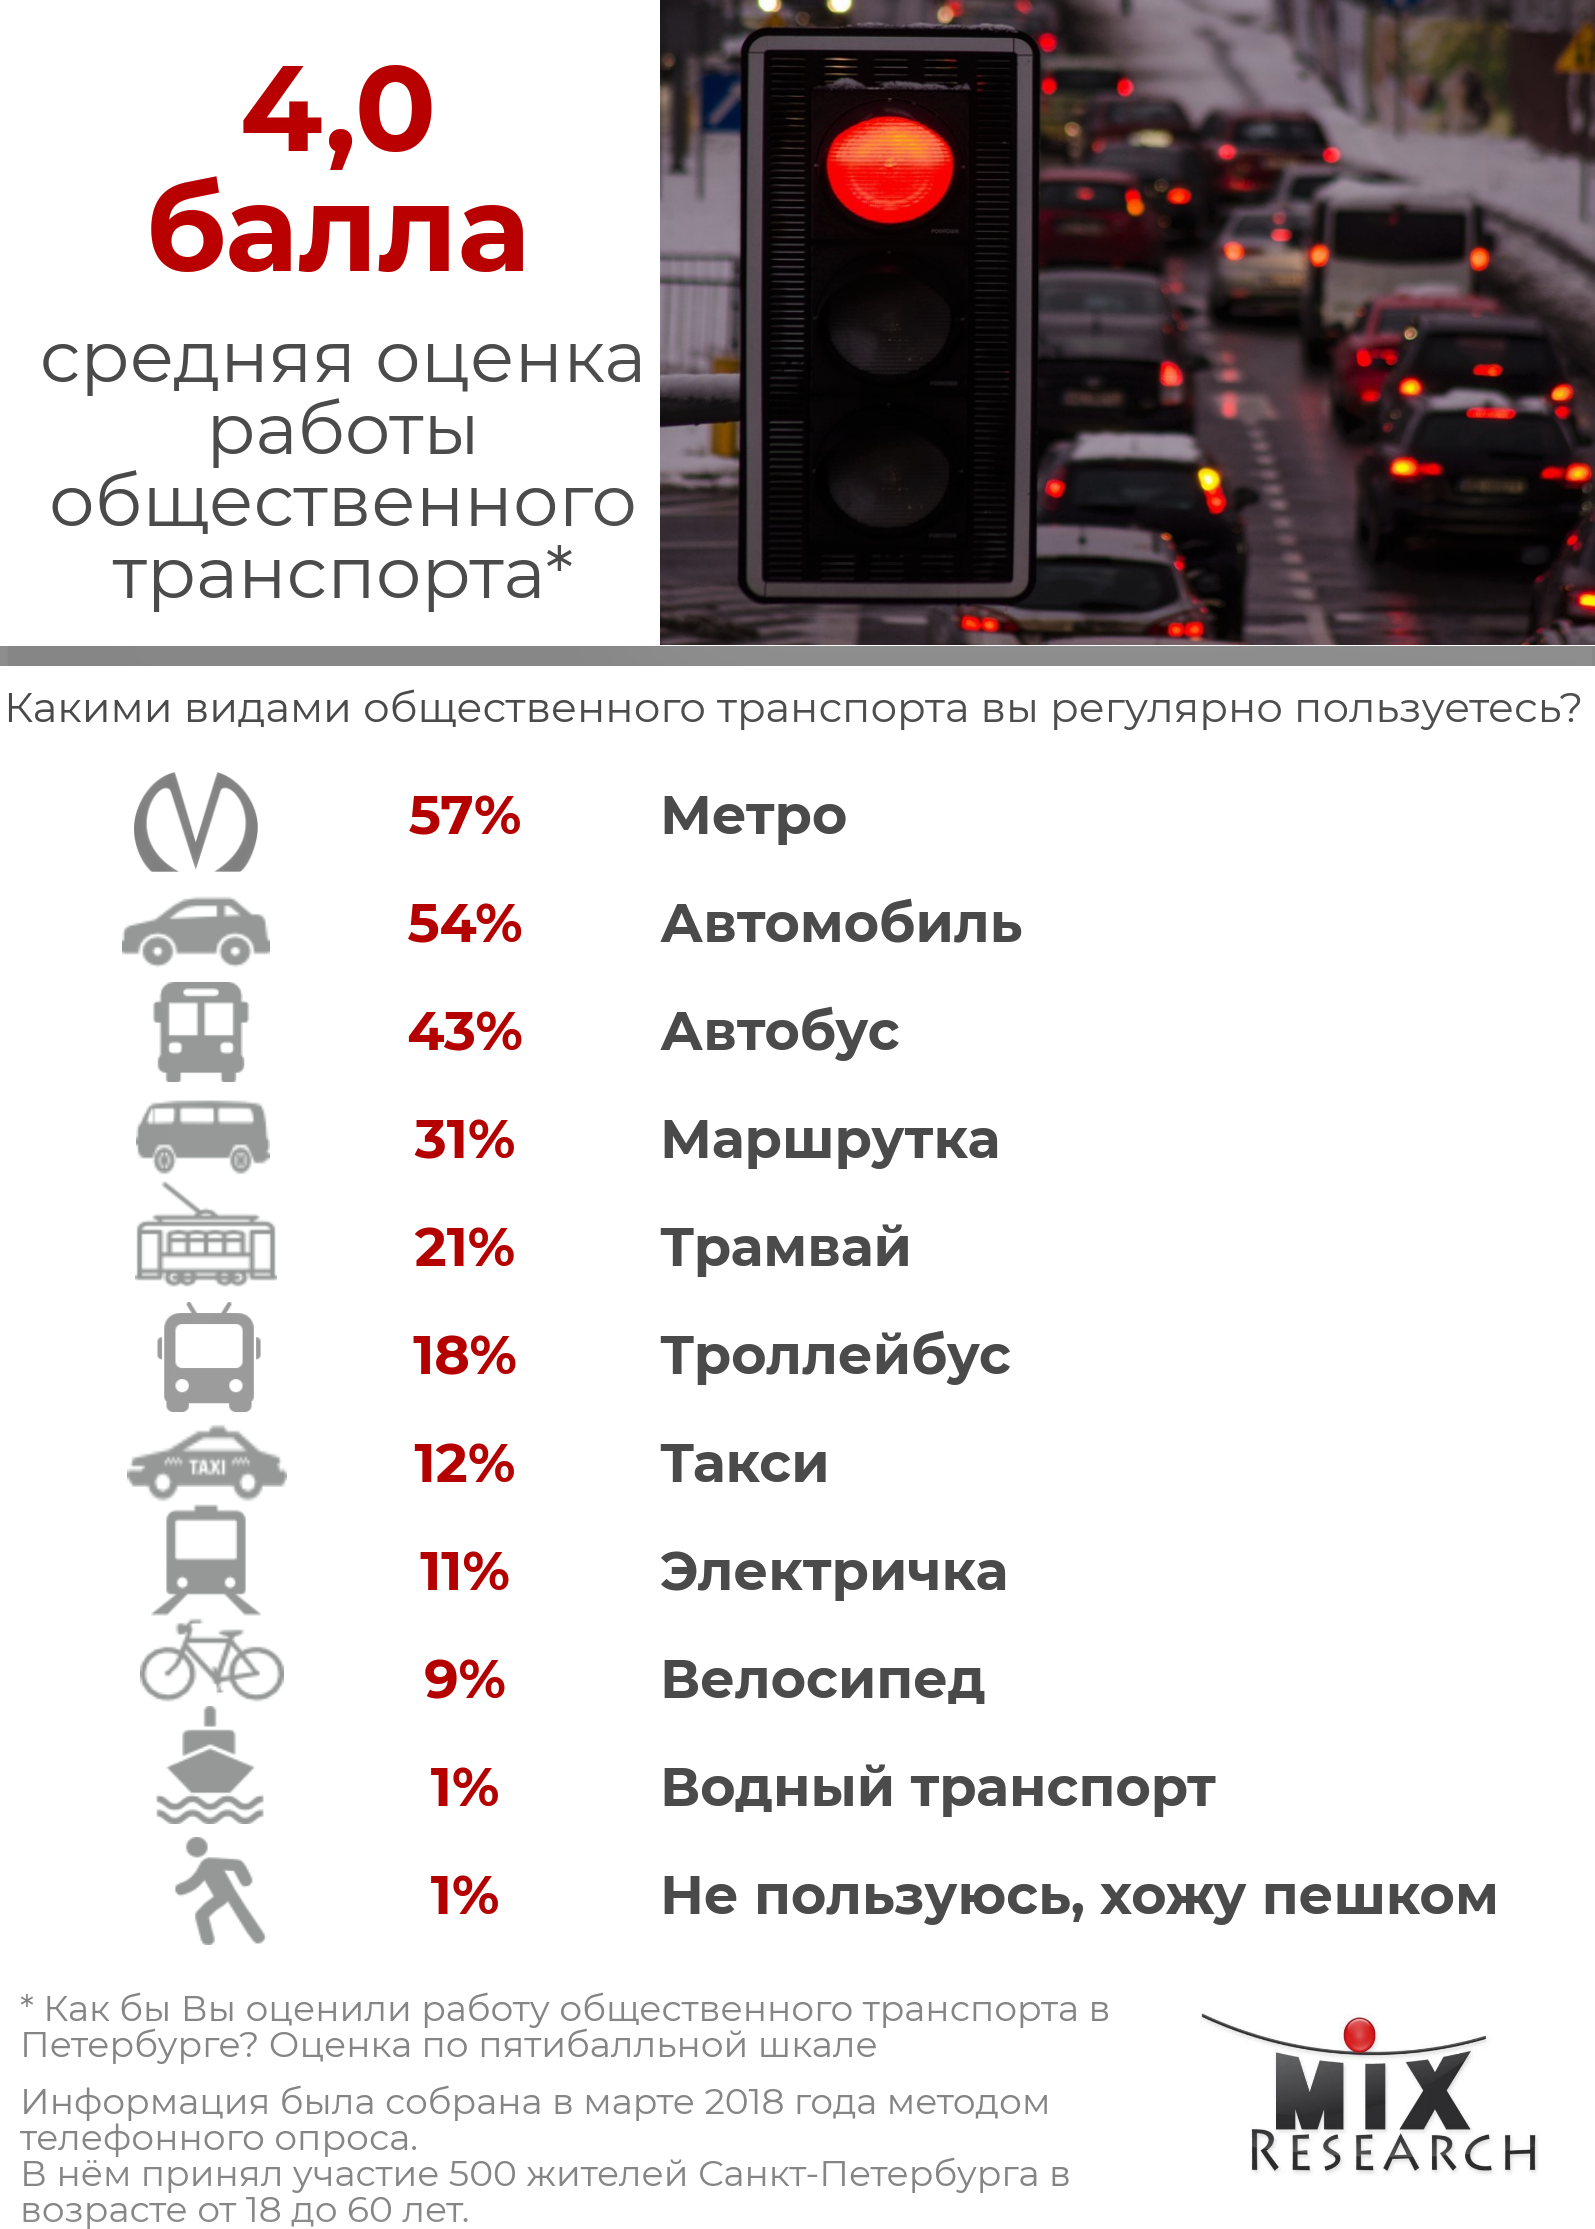 Инфографика оценка общественного транспорта жителями Санкт-Петербурга